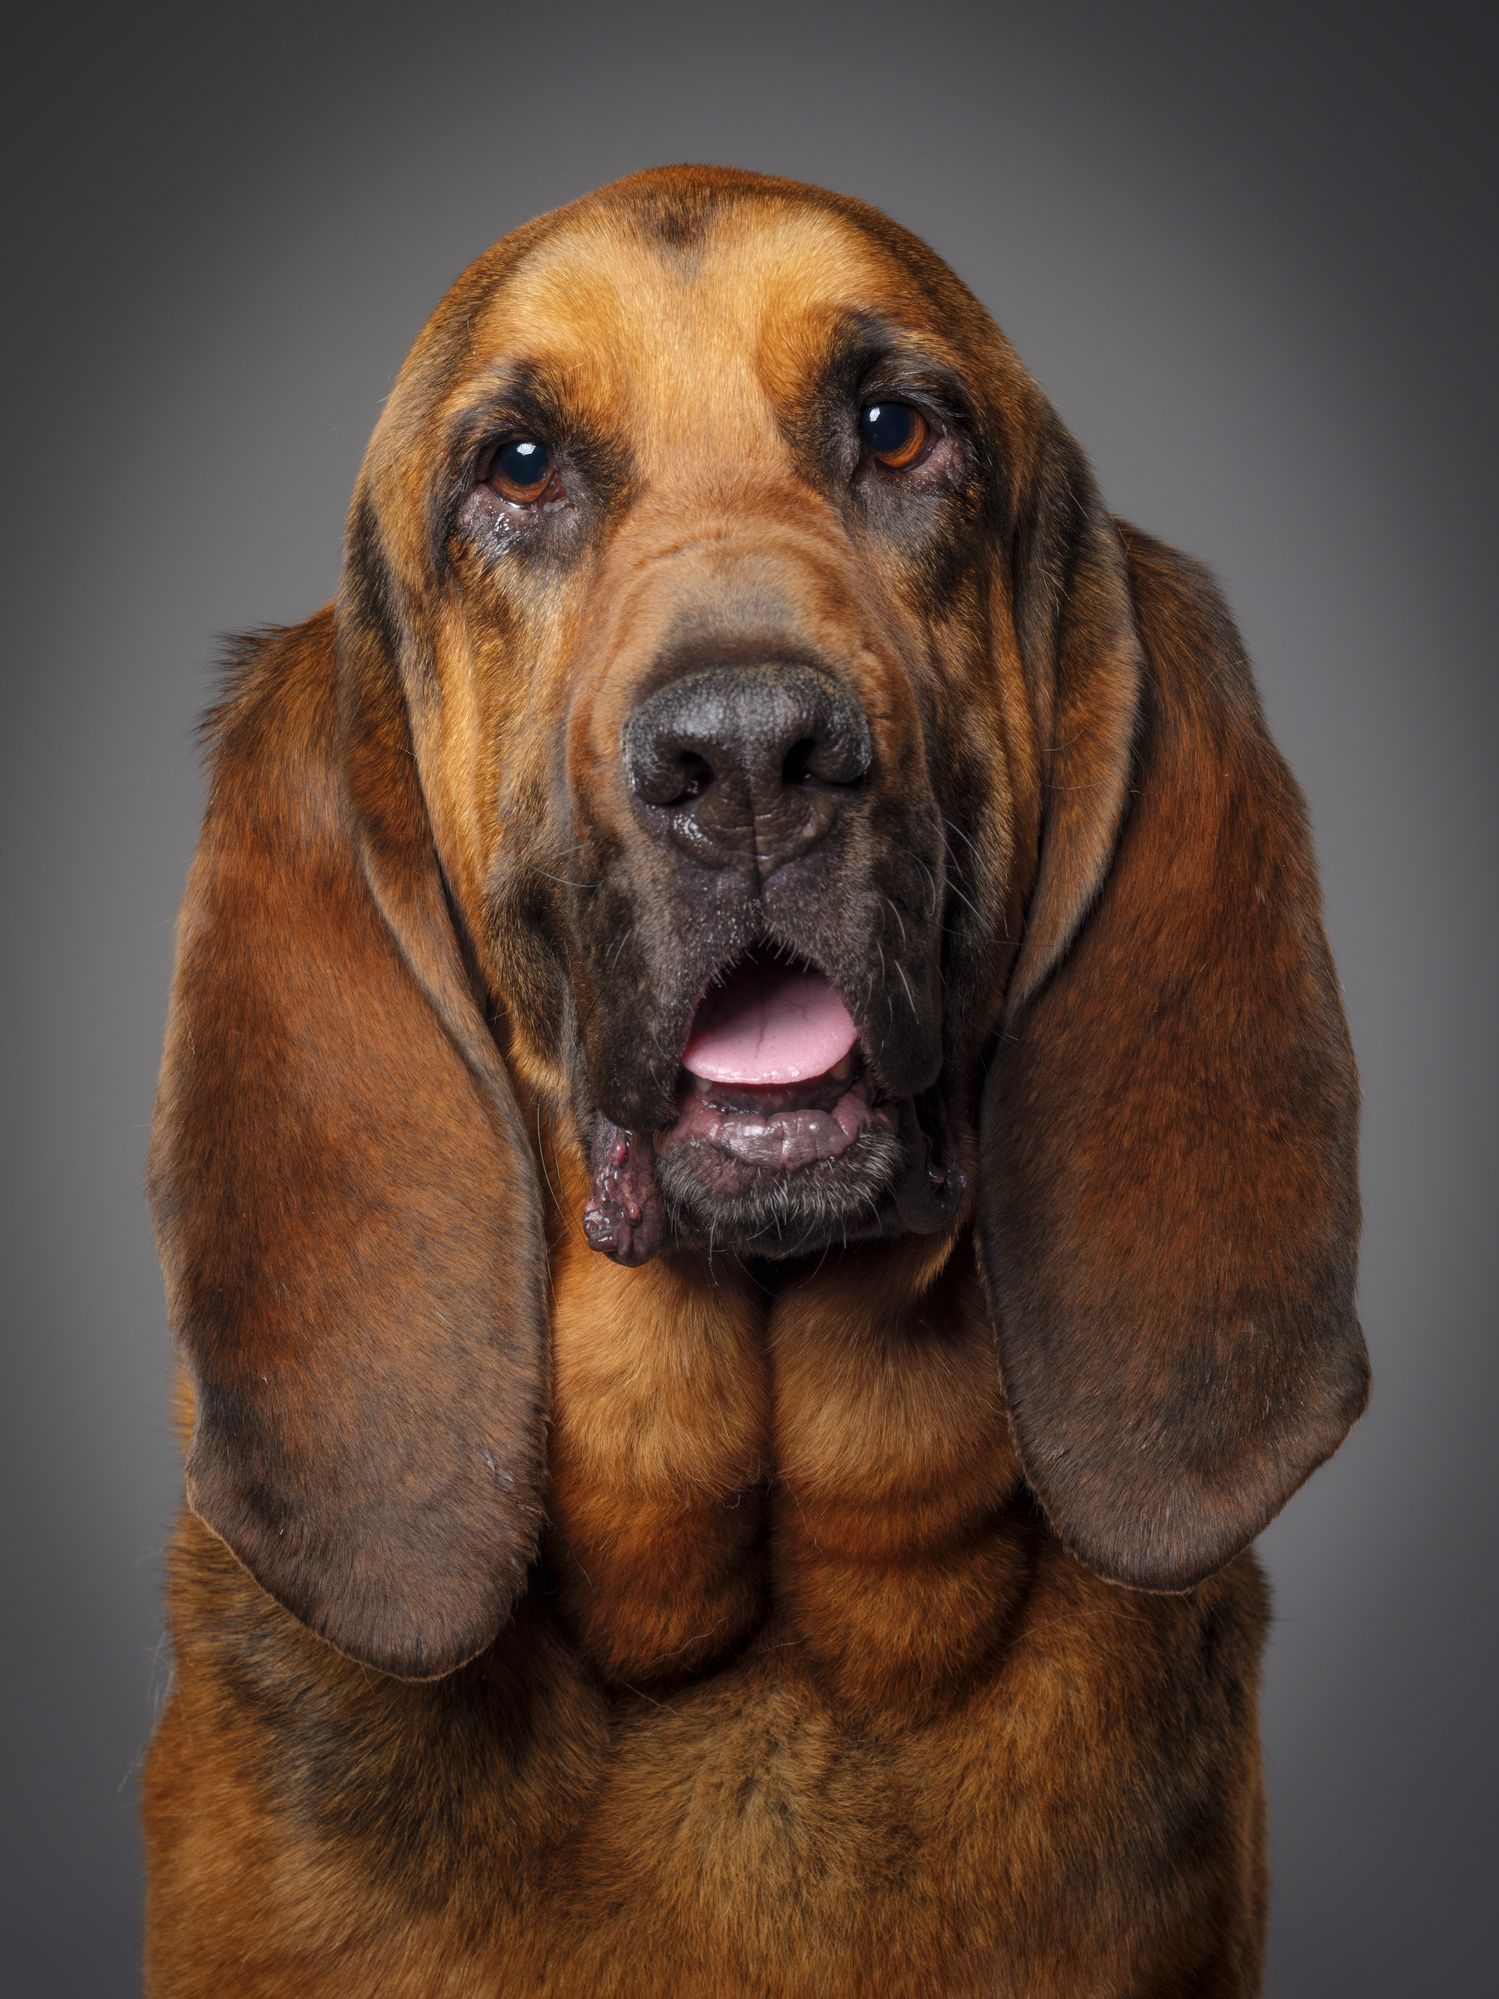 20 Best Hound Dog Breeds - Hound Dogs